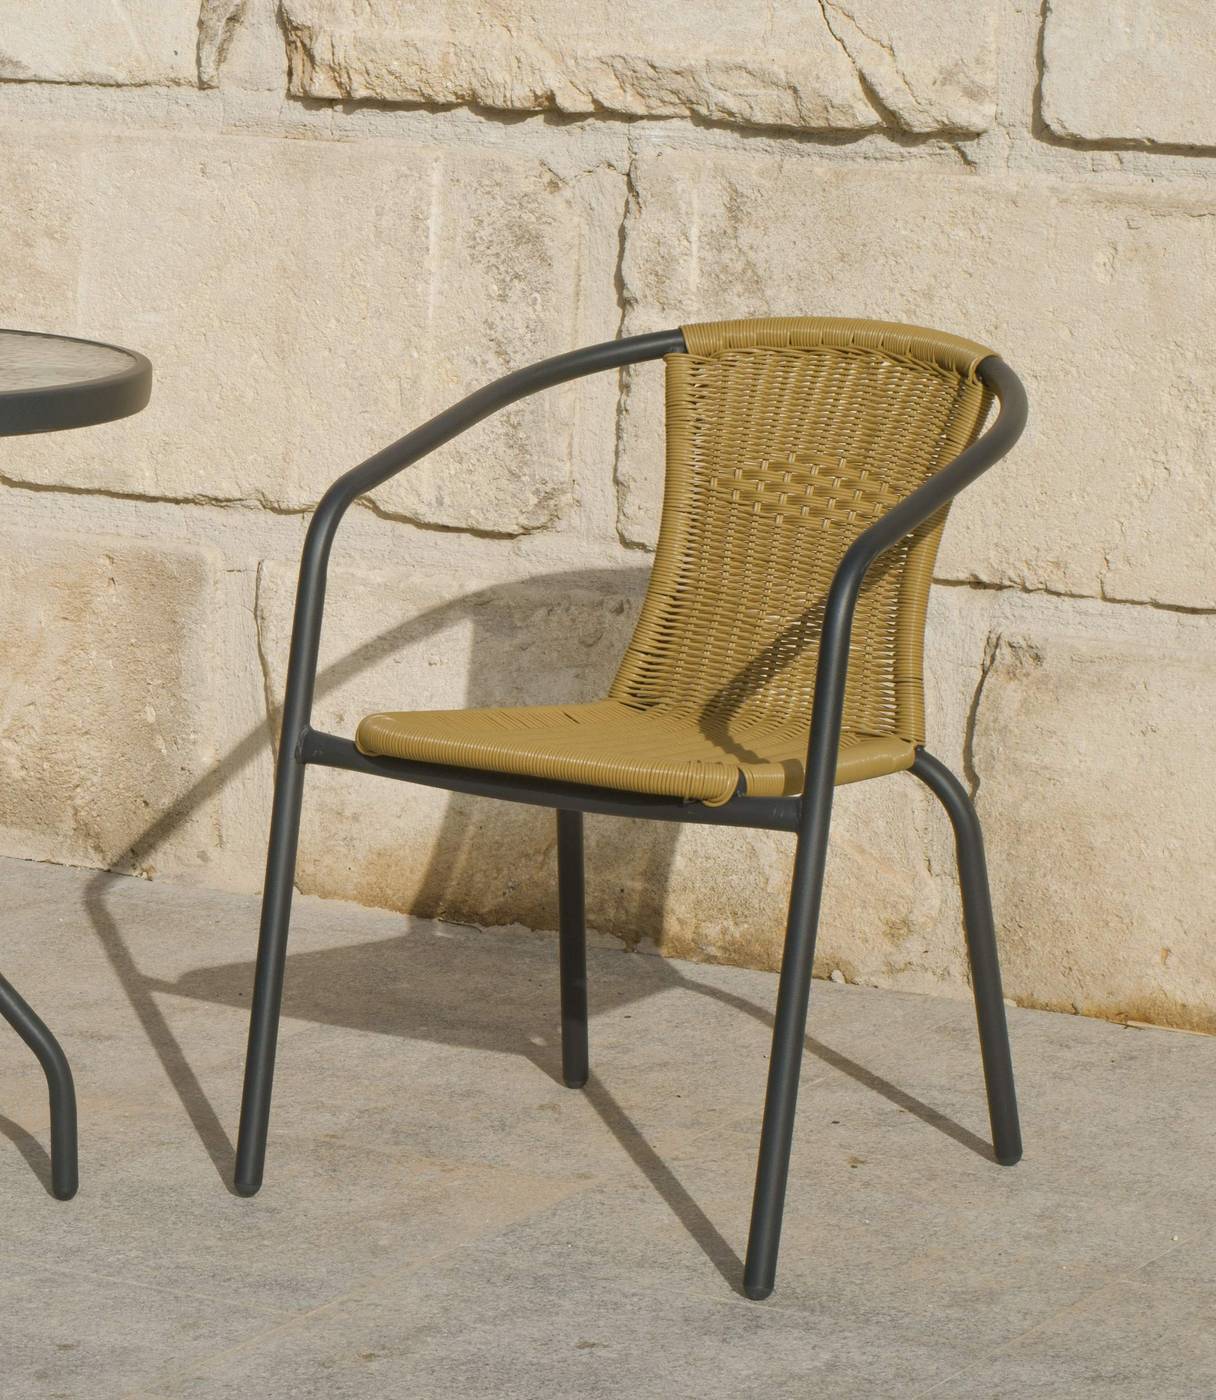 Conjunto Acero Valencia 60-2 - Conjunto de acero inoxidable color antracita: mesa con tablero de cristal templado de 60 cm. + 2 sillones de acero y wicker reforzado